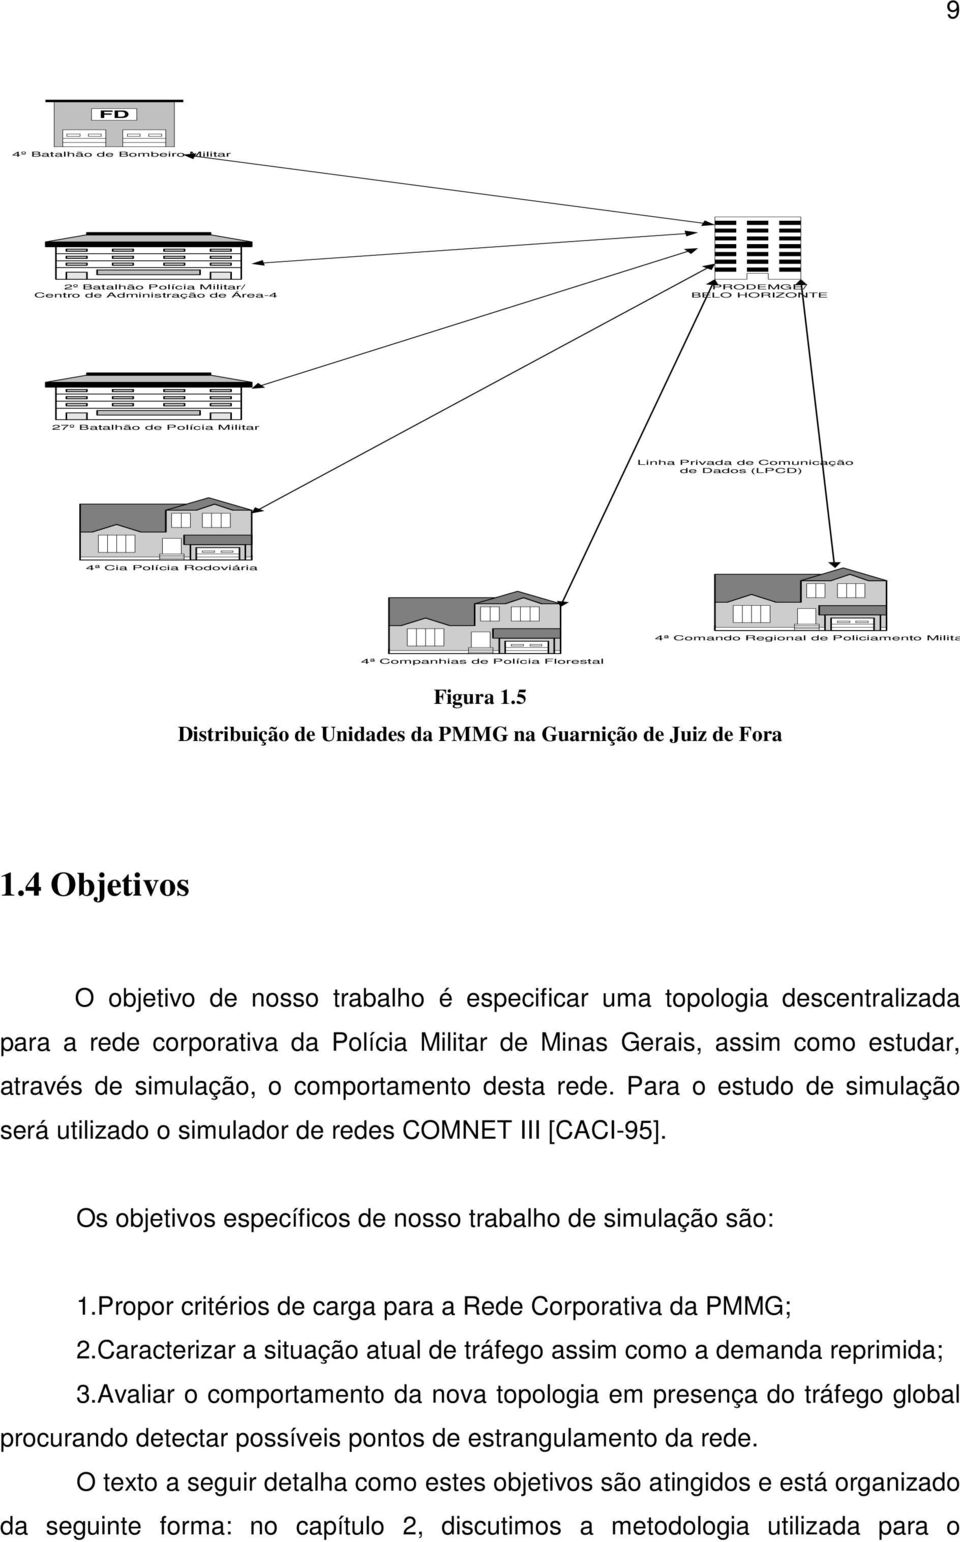 4 Objetivos O objetivo de nosso trabalho é especificar uma topologia descentralizada para a rede corporativa da Polícia Militar de Minas Gerais, assim como estudar, através de simulação, o